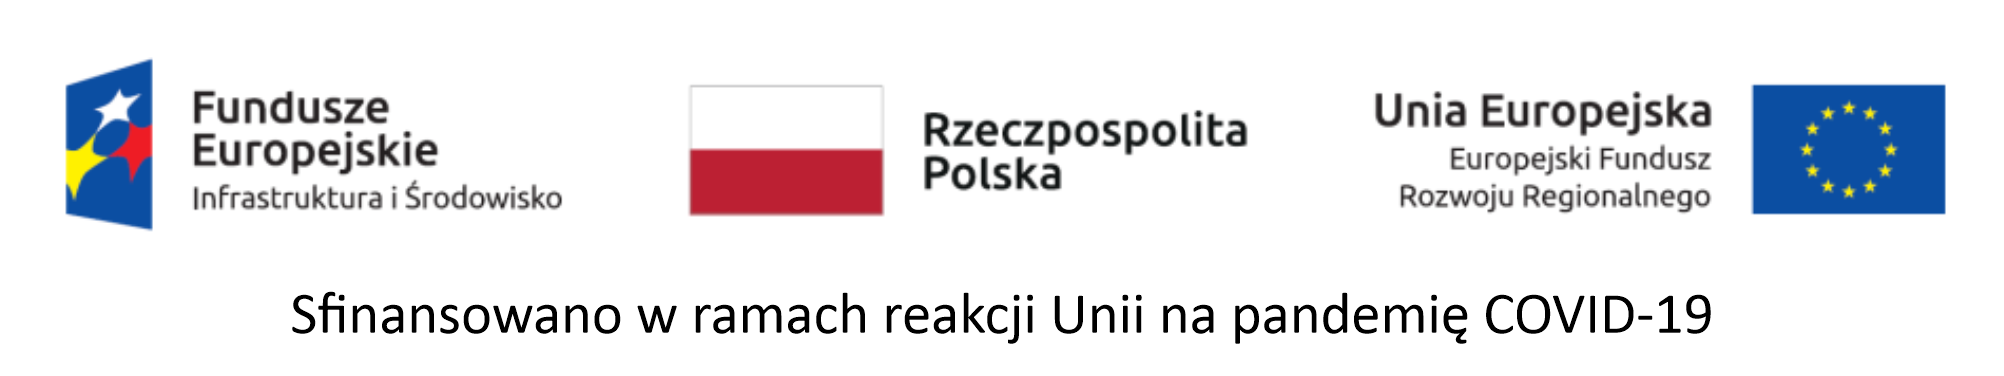 Logotypy: Funfusze Europejskie - Infrastruktura i Środowisko, Rzeczpospolita Polska, UE - Europejski Fundusz Rozwoju Regionalnego